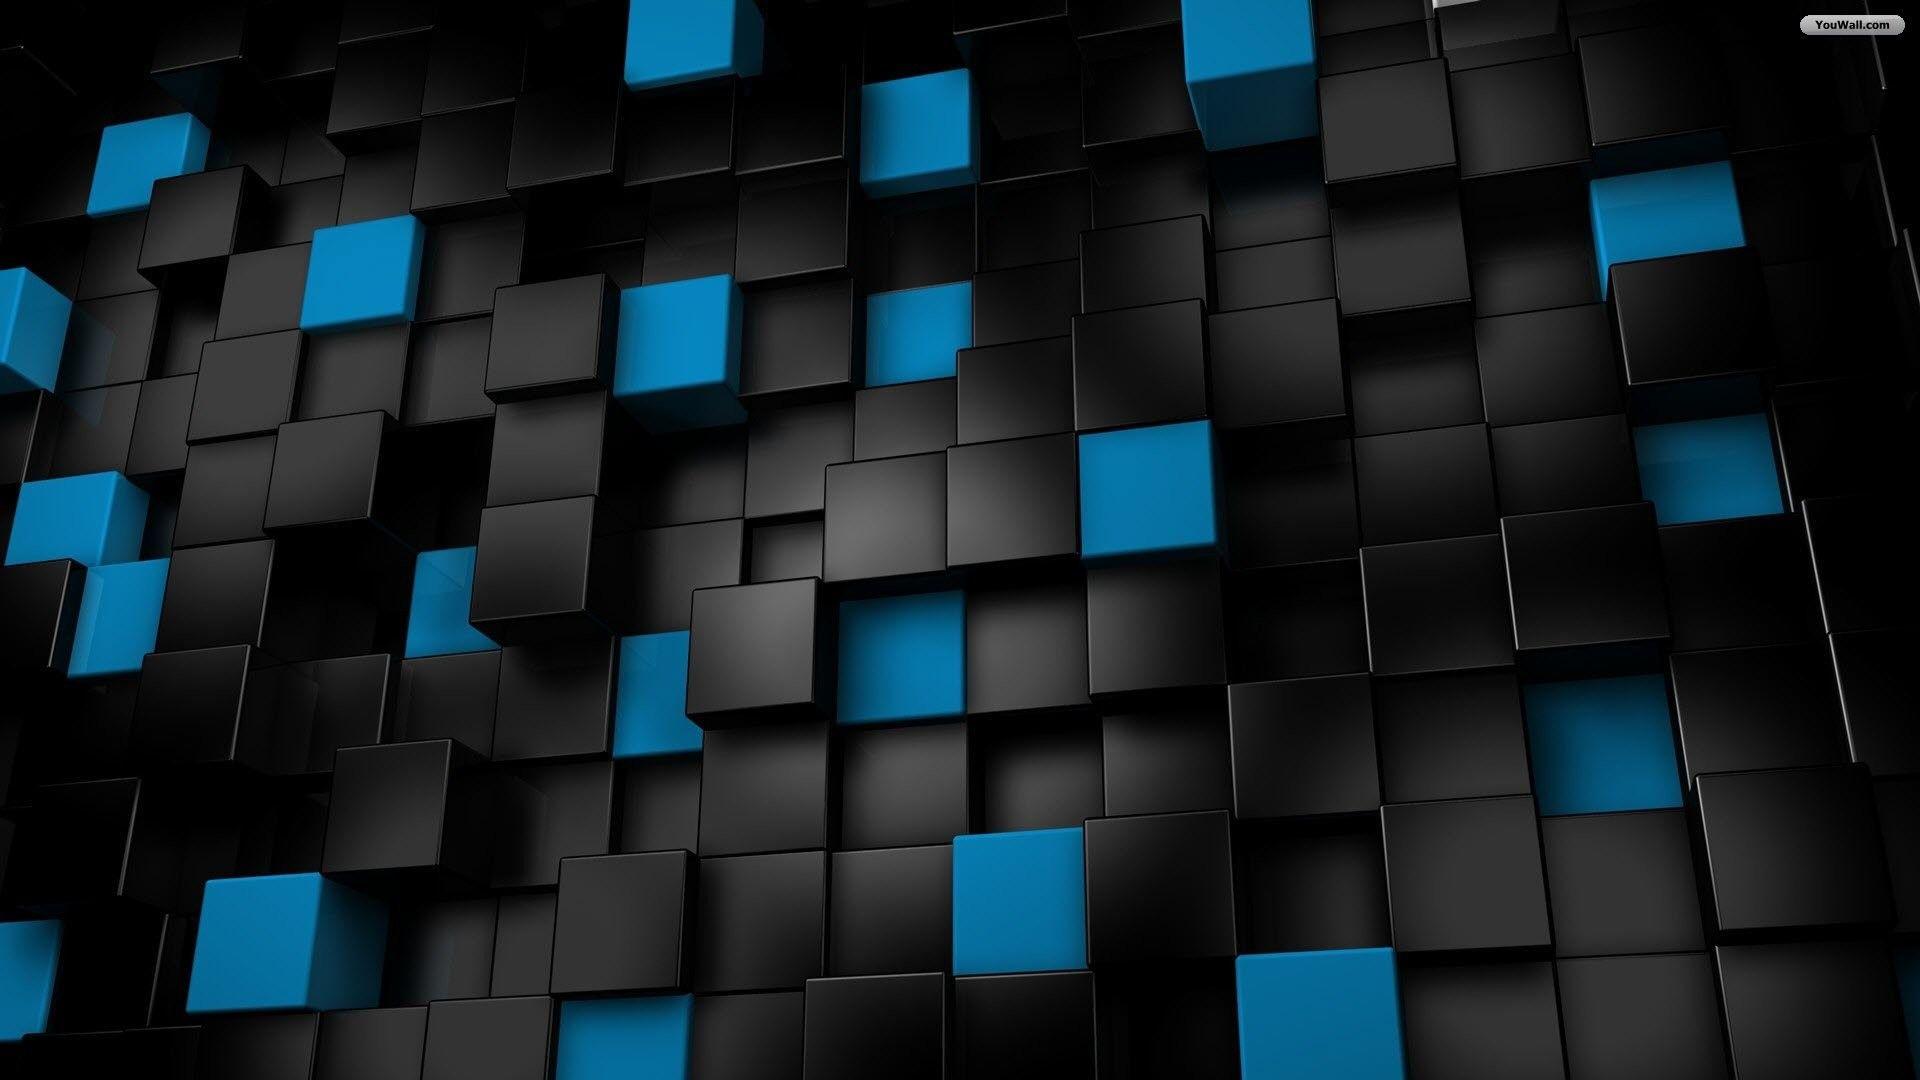 Khám phá hình nền đen xanh đầy bí ẩn, tạo cho máy tính của bạn một vẻ ngoài độc đáo và cá tính. Sự kết hợp giữa màu đen và xanh sẽ khiến bạn cảm thấy bình tĩnh và sự tươi mới.